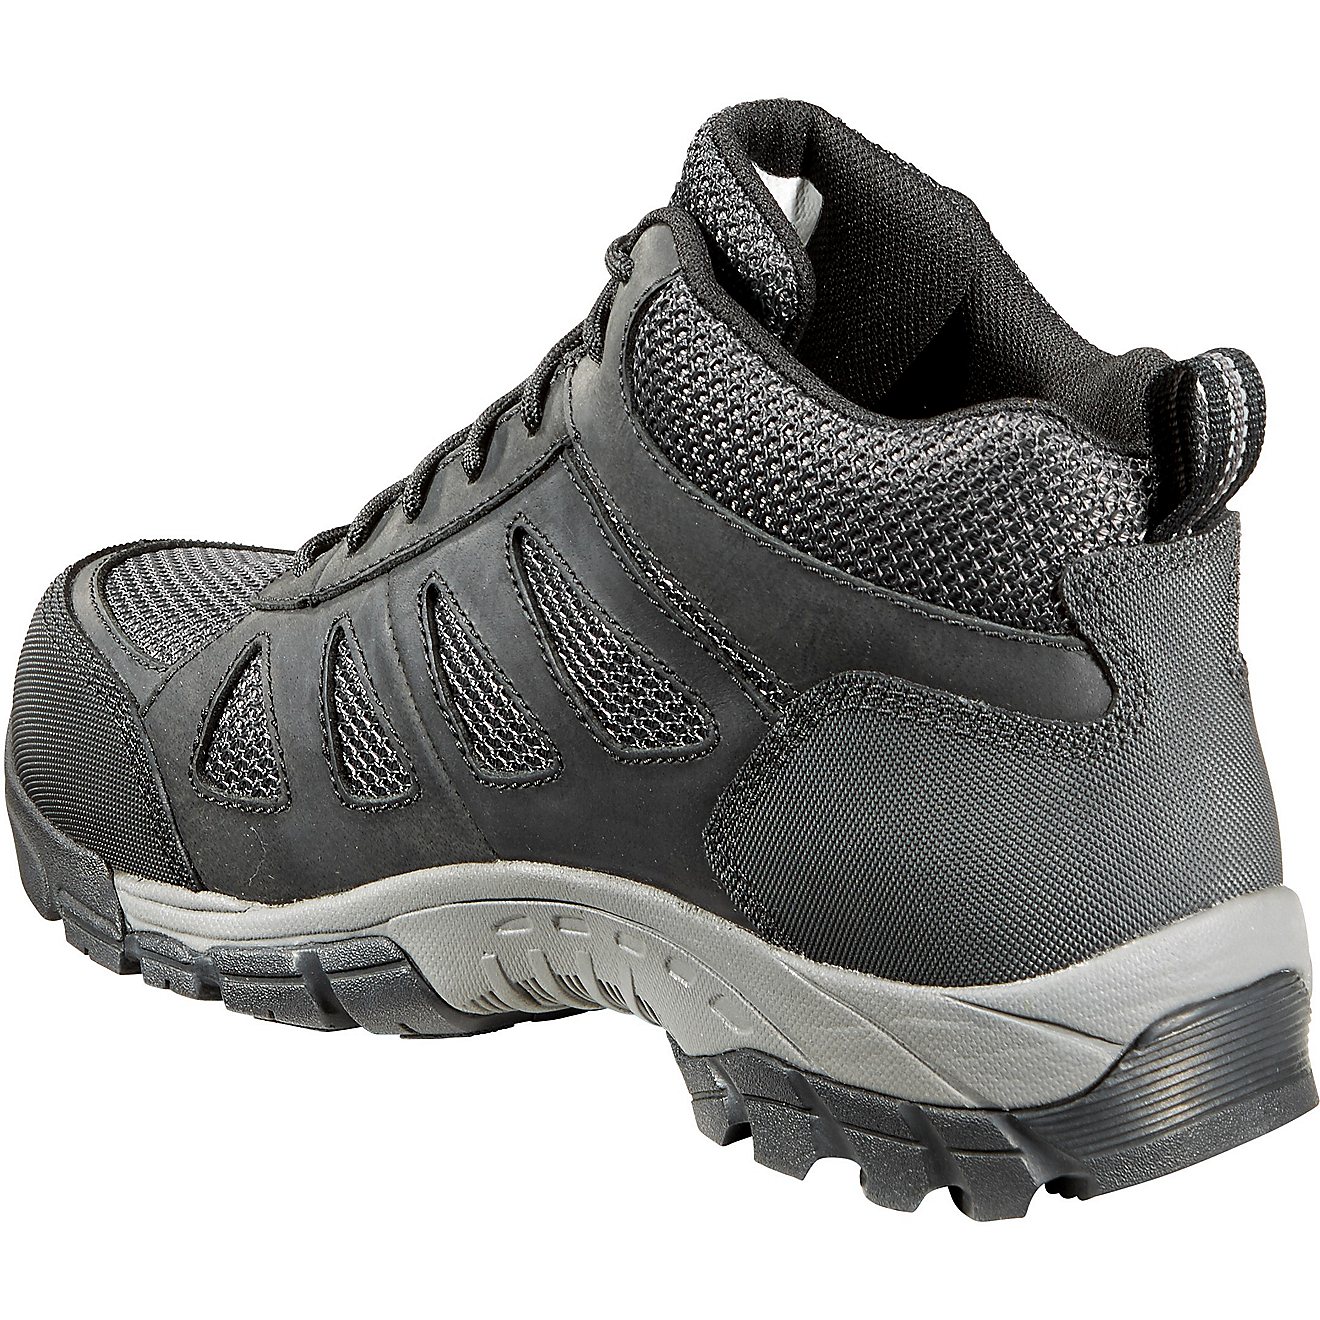 Carhartt Men's Lightweight Safety Toe Hiker Work Boots                                                                           - view number 4